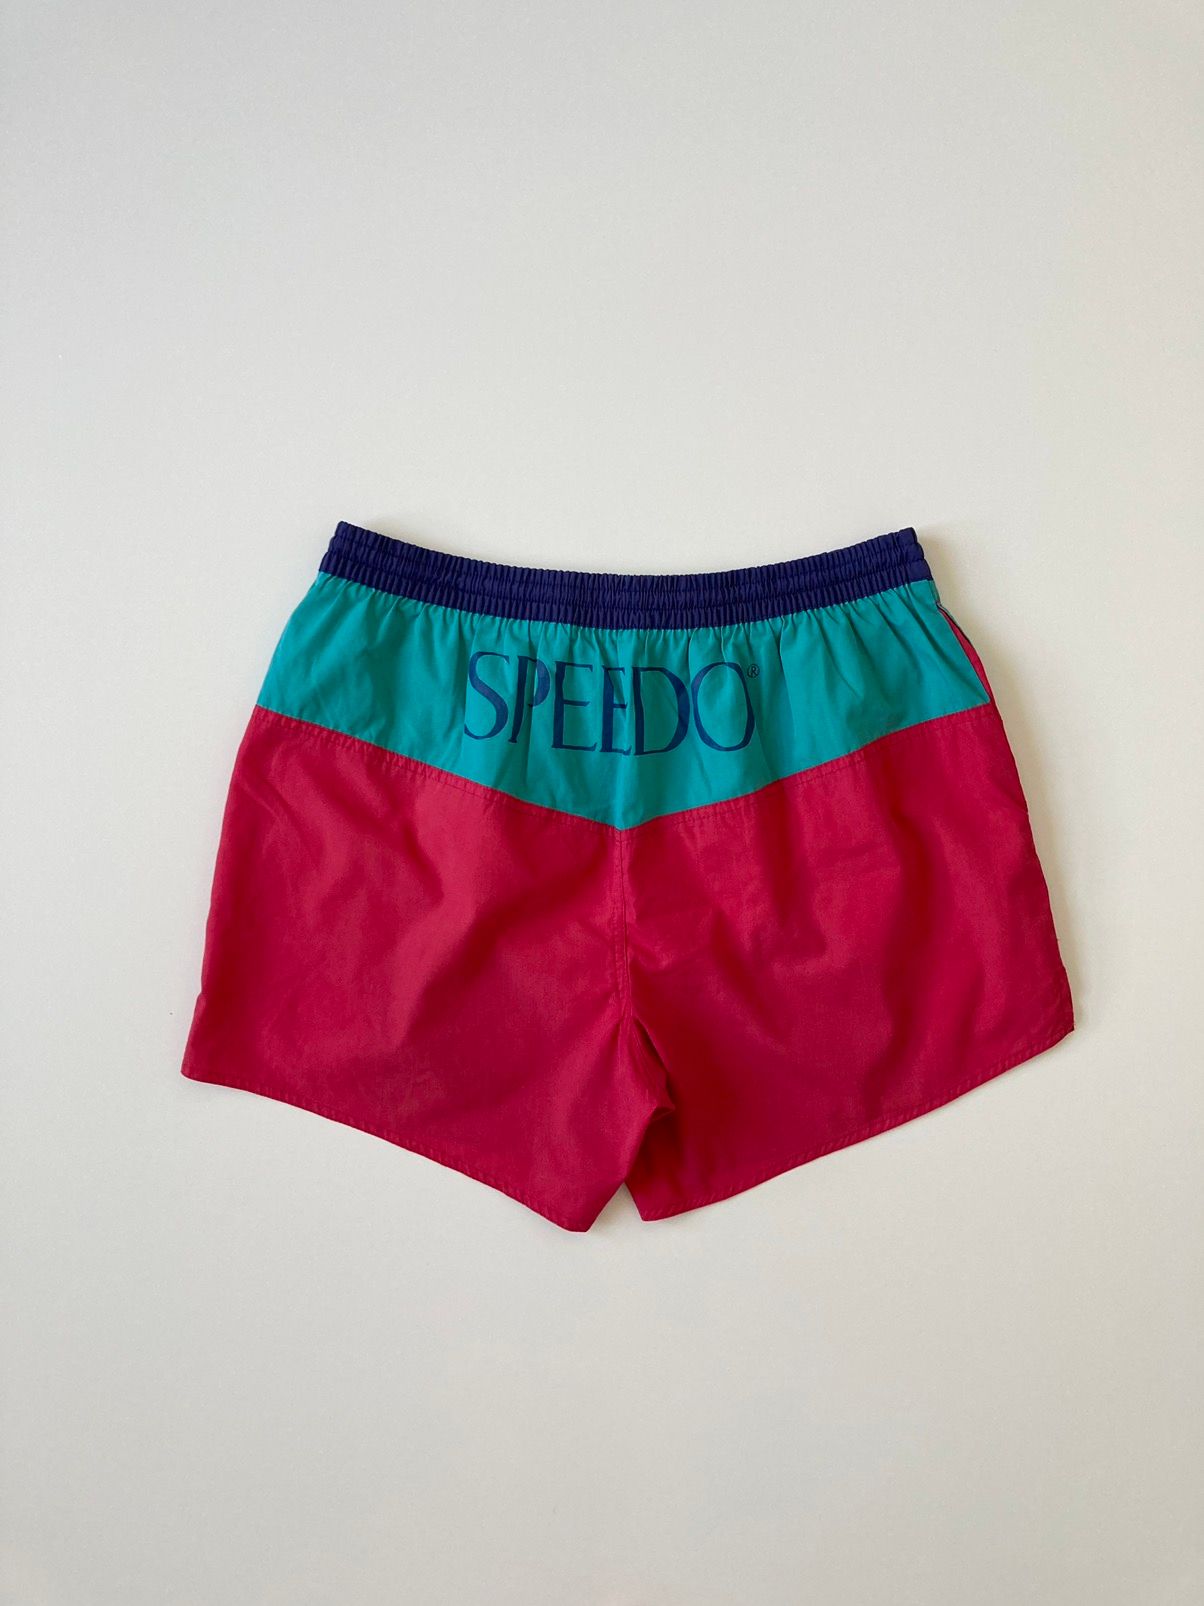 Vintage colorful shorts Speedo Vintage 90’s L Size US 34 / EU 50 - 8 Preview